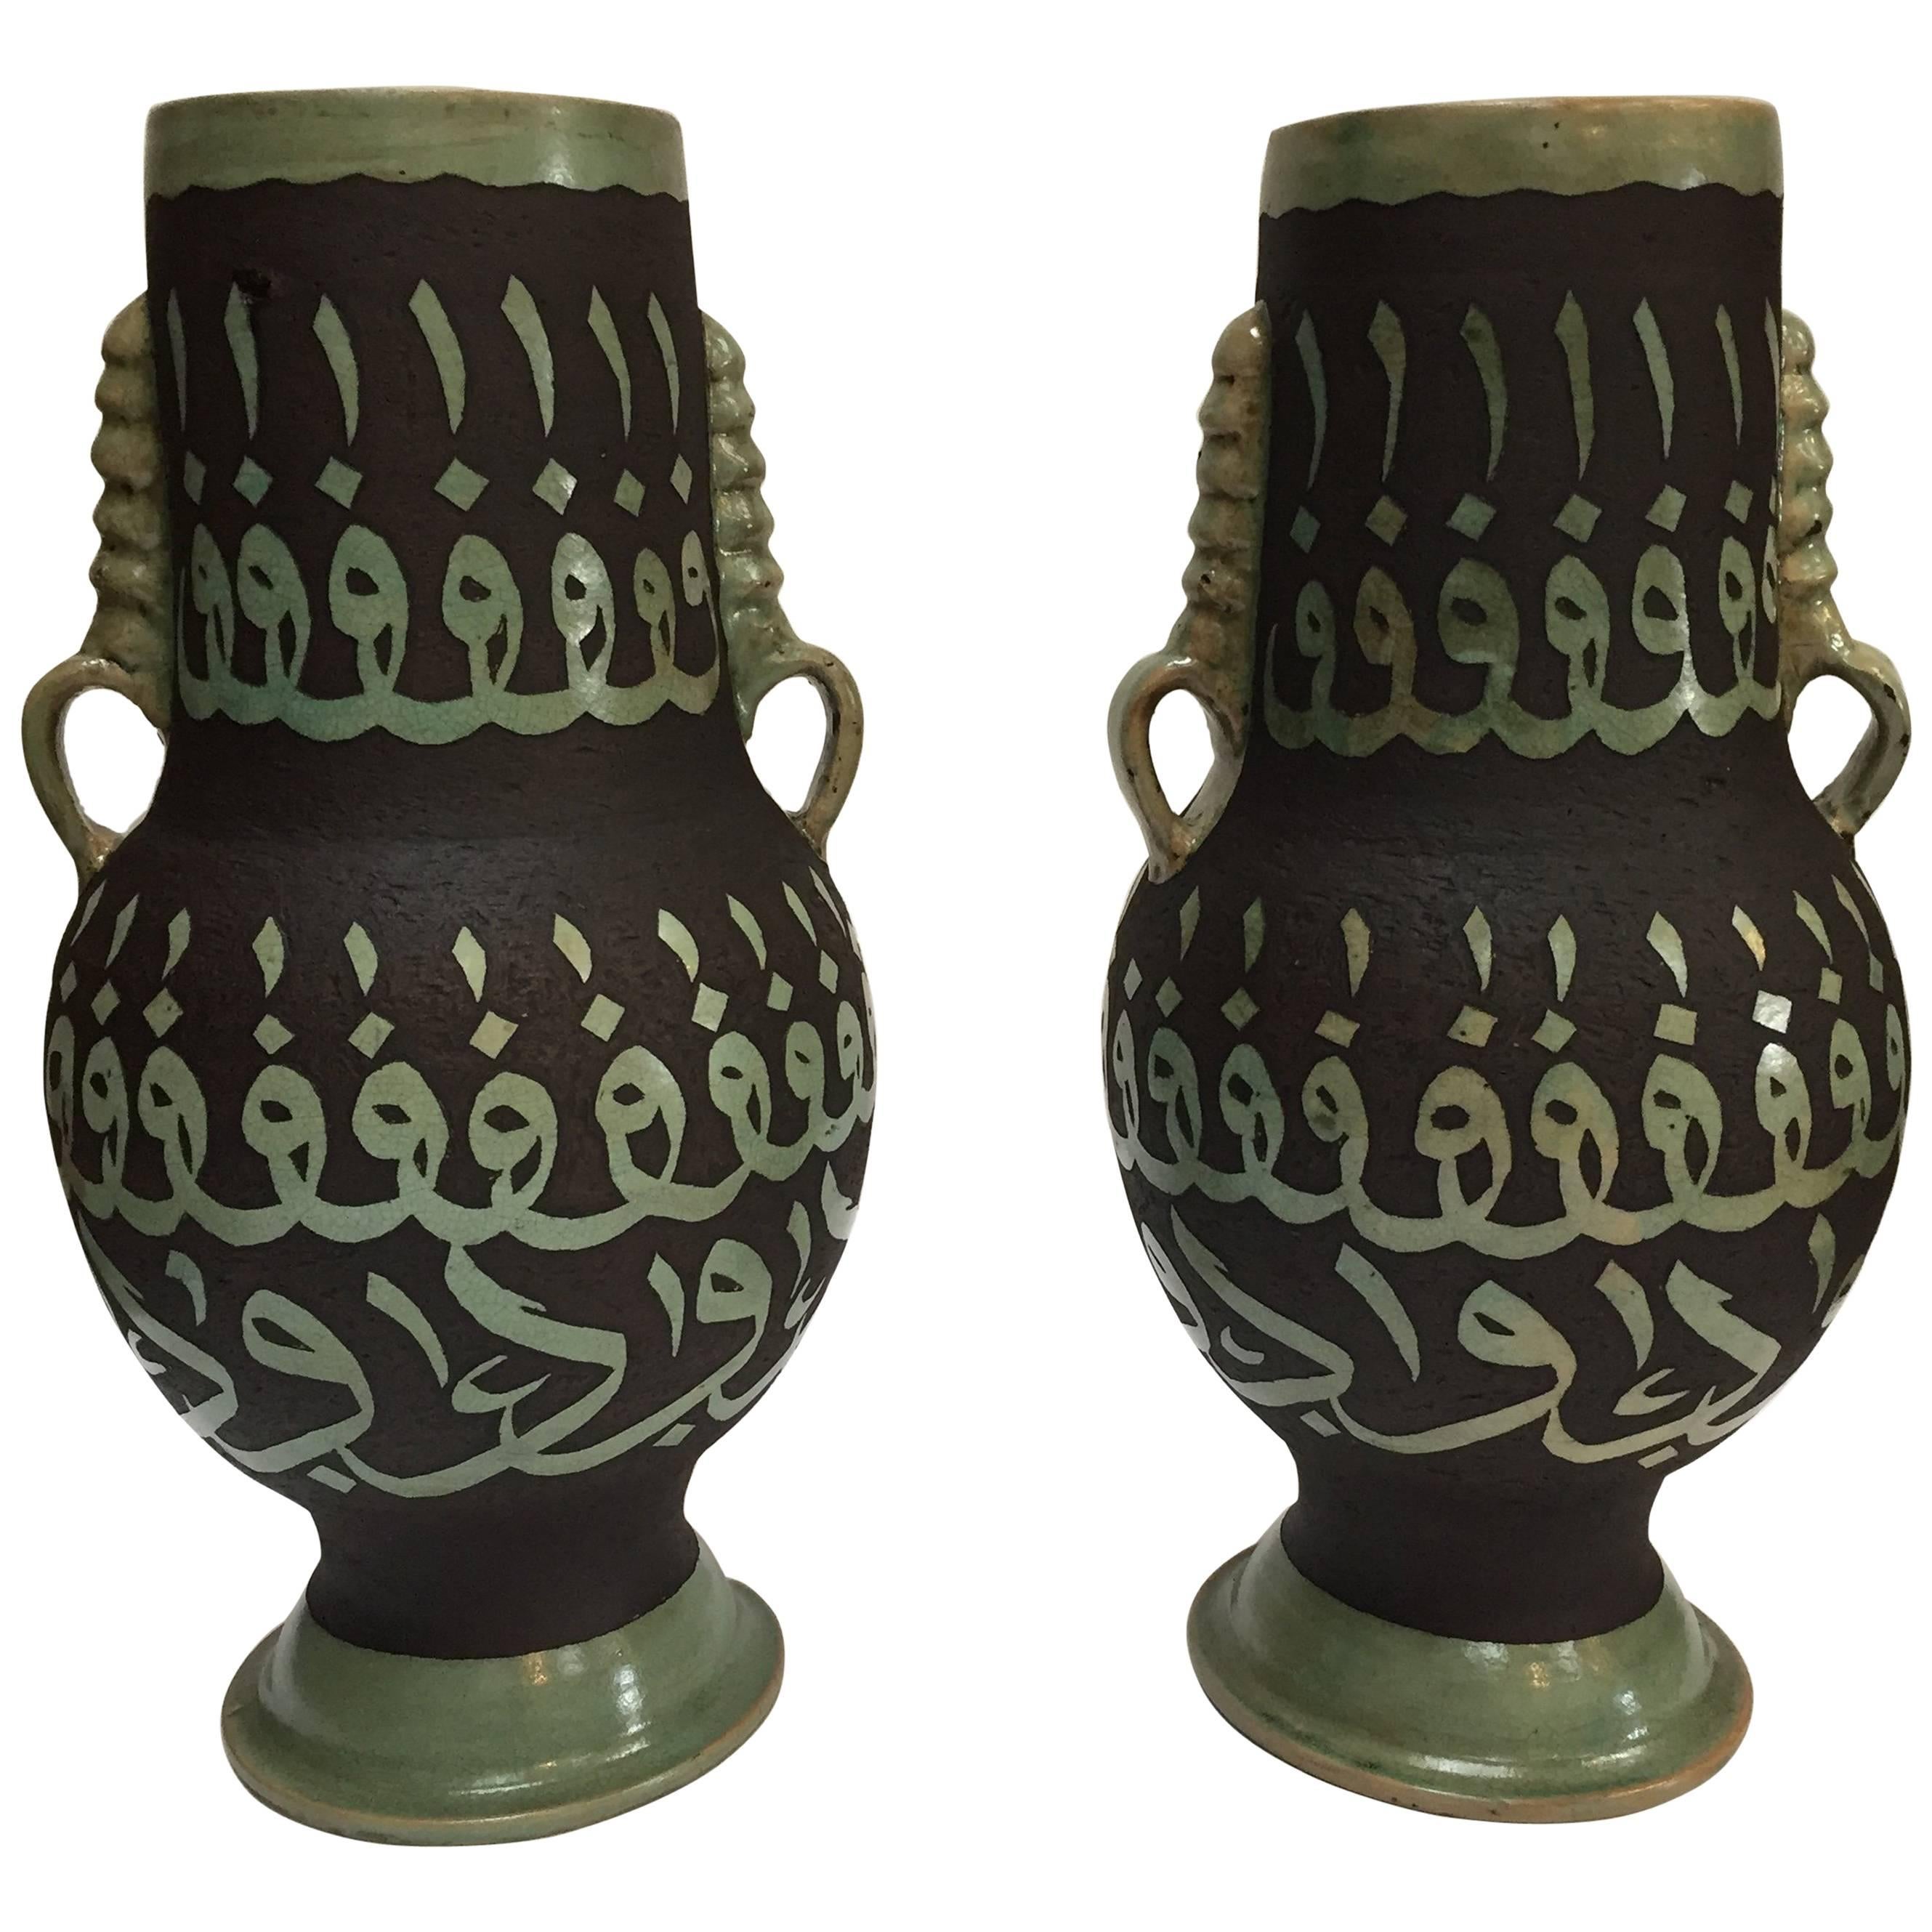 Paire de vases en céramique marocaine verte avec calligraphie arabe ciselée et écriture